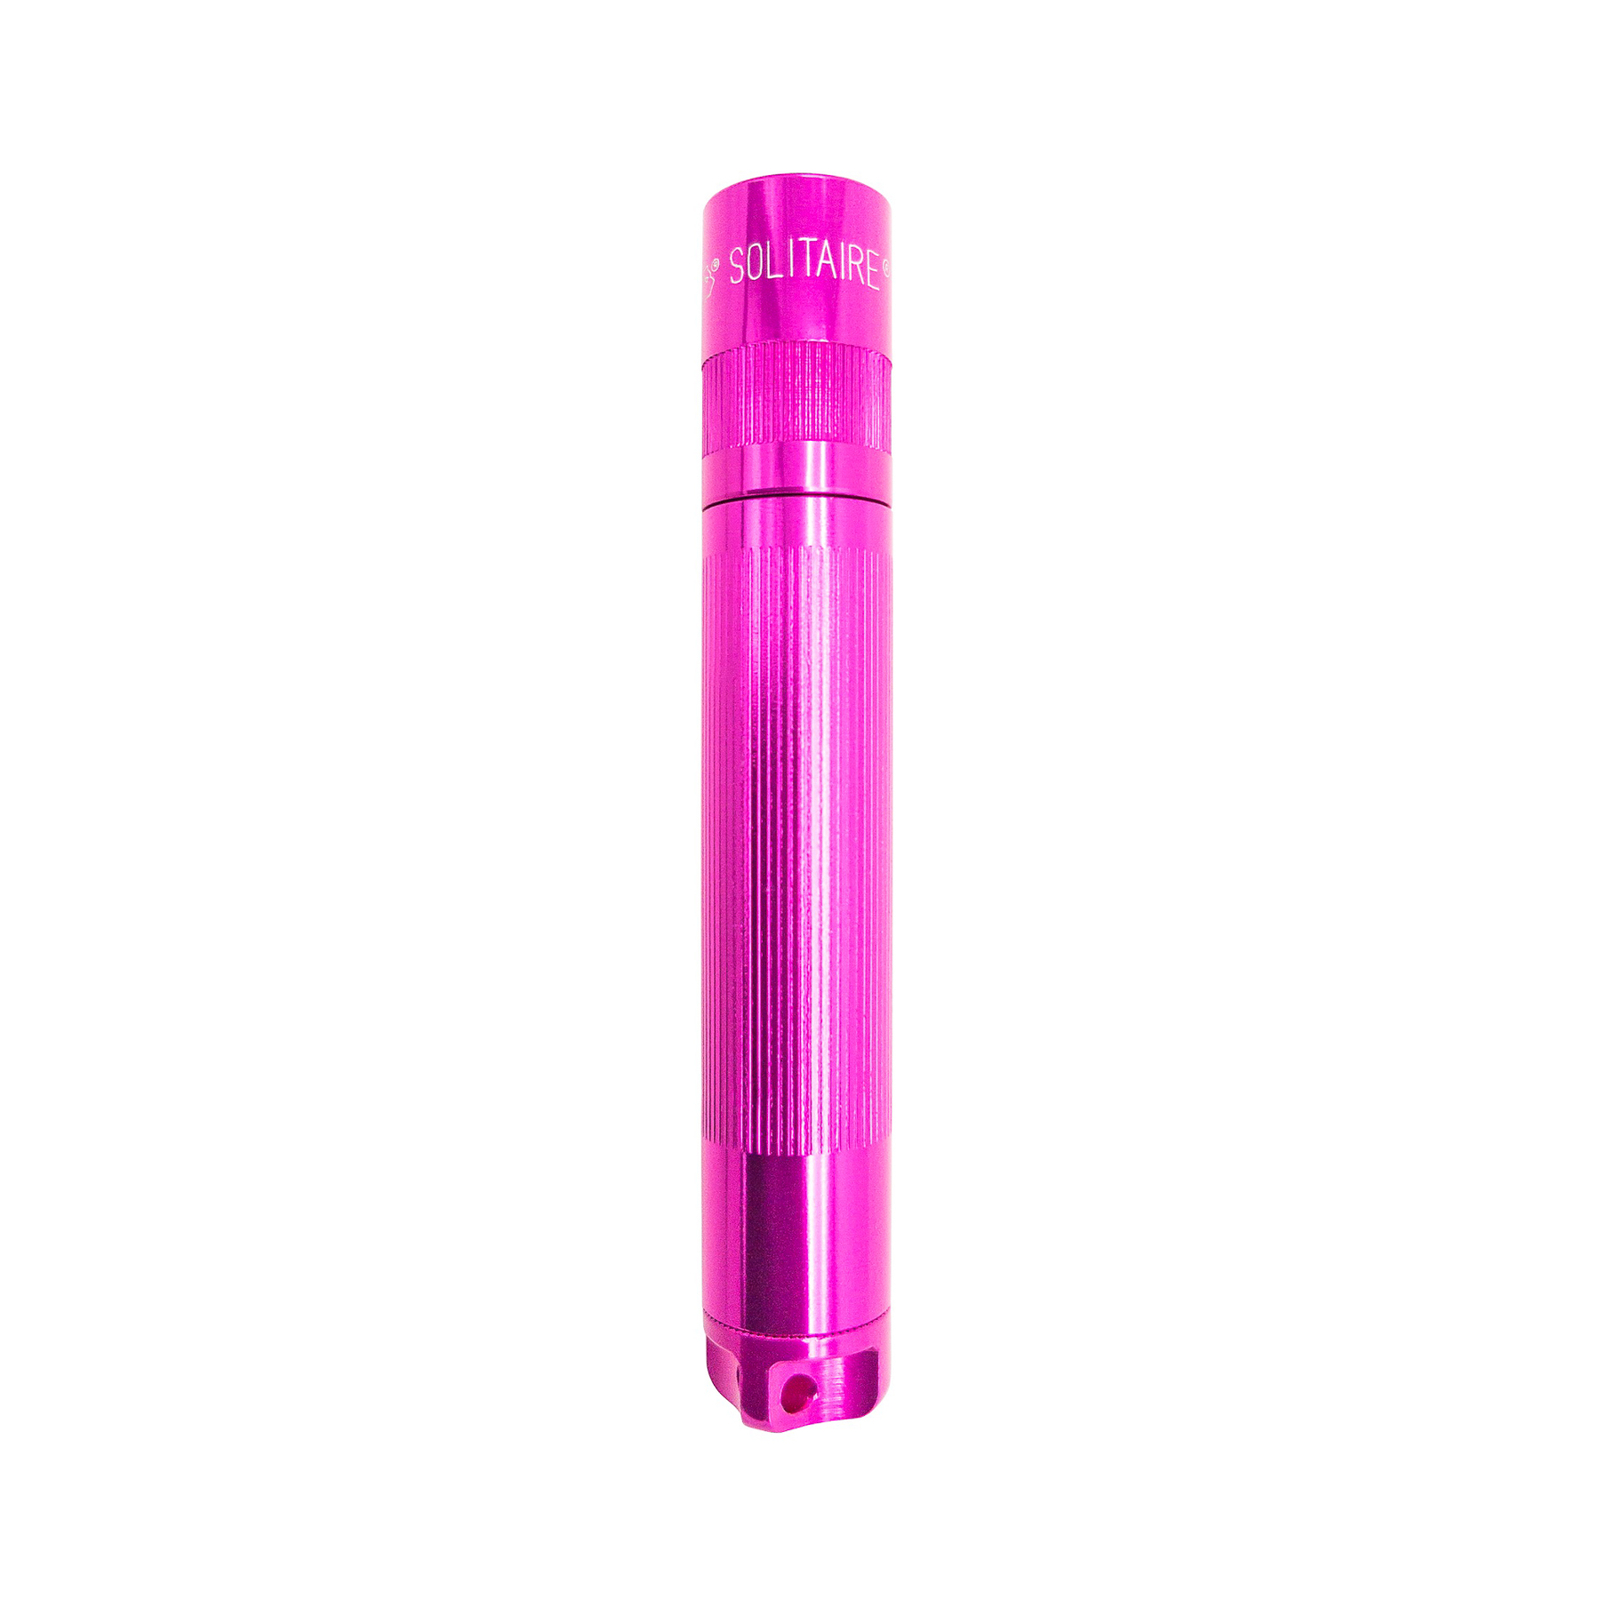 Svítilna Maglite LED Solitaire, 1 článek AAA, růžová